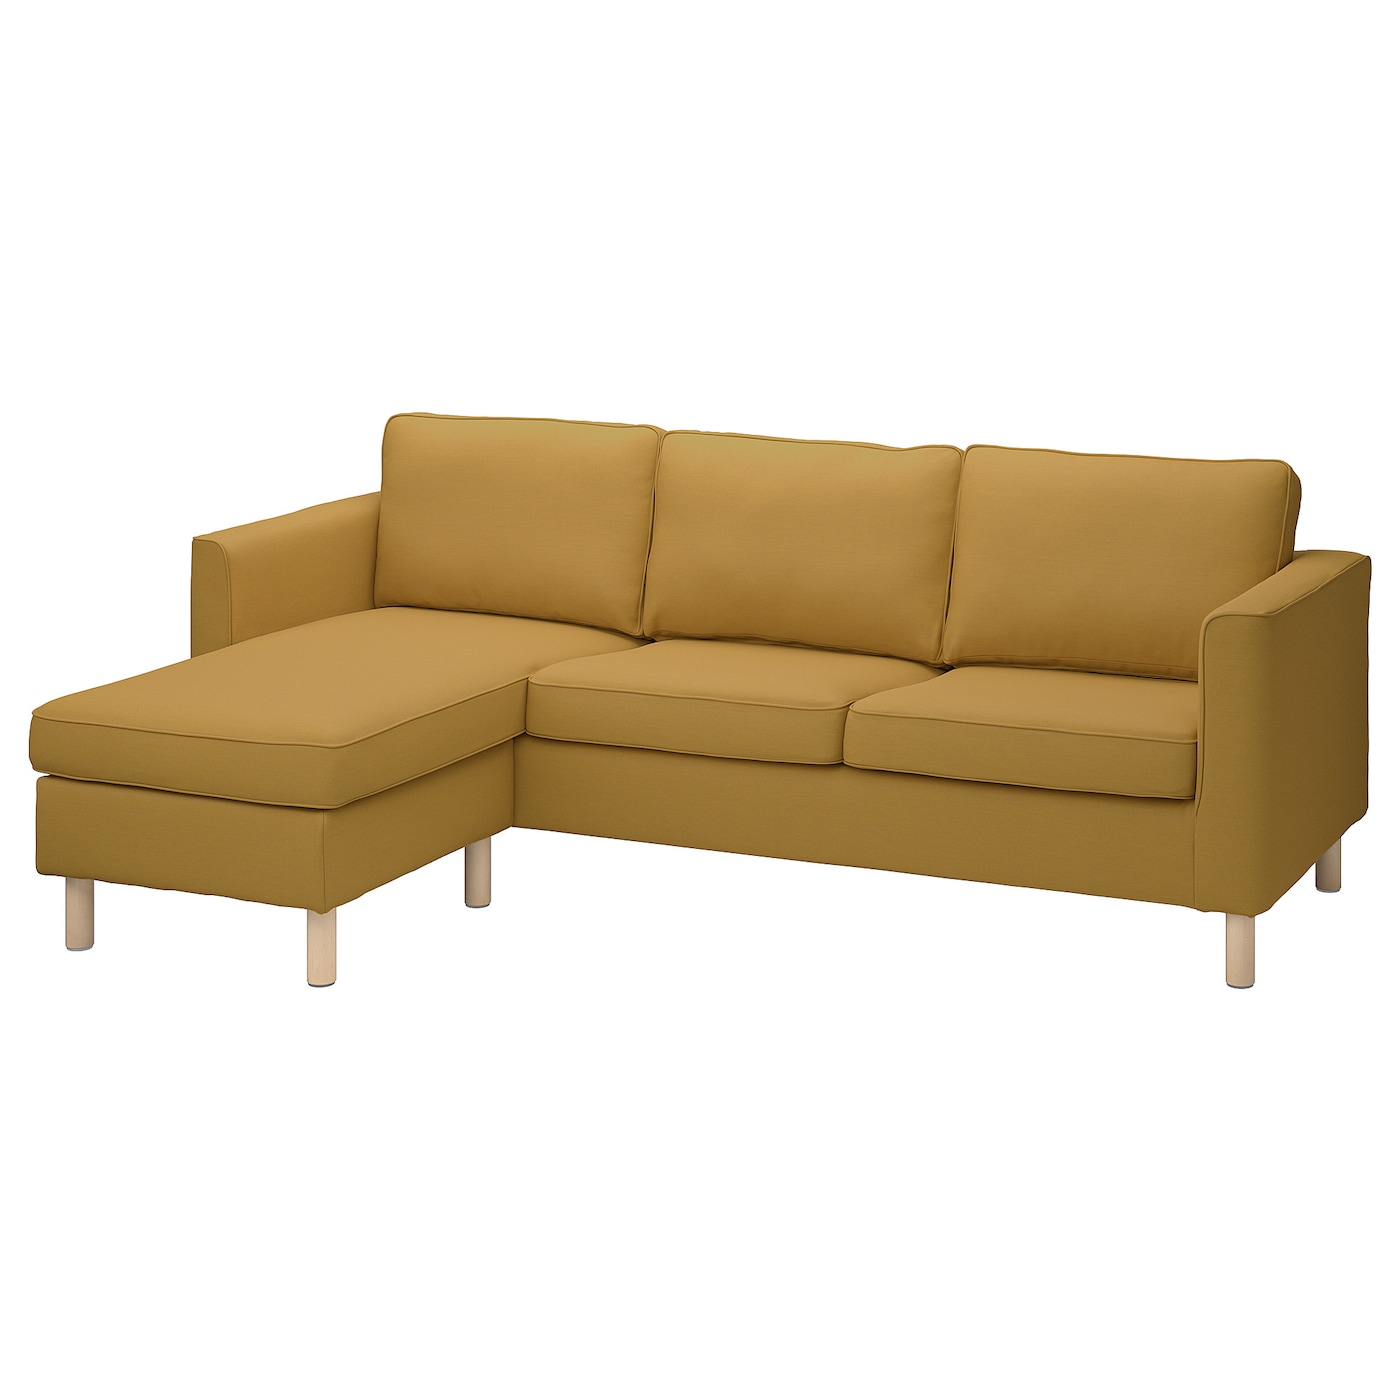 4 шт комод комод шкаф диван сменные ножки диван подставка для кресла ножки деревянные ножки для стола ПЭРУП 3-местный диван + диван, Виссле желто-коричневый PÄRUP IKEA